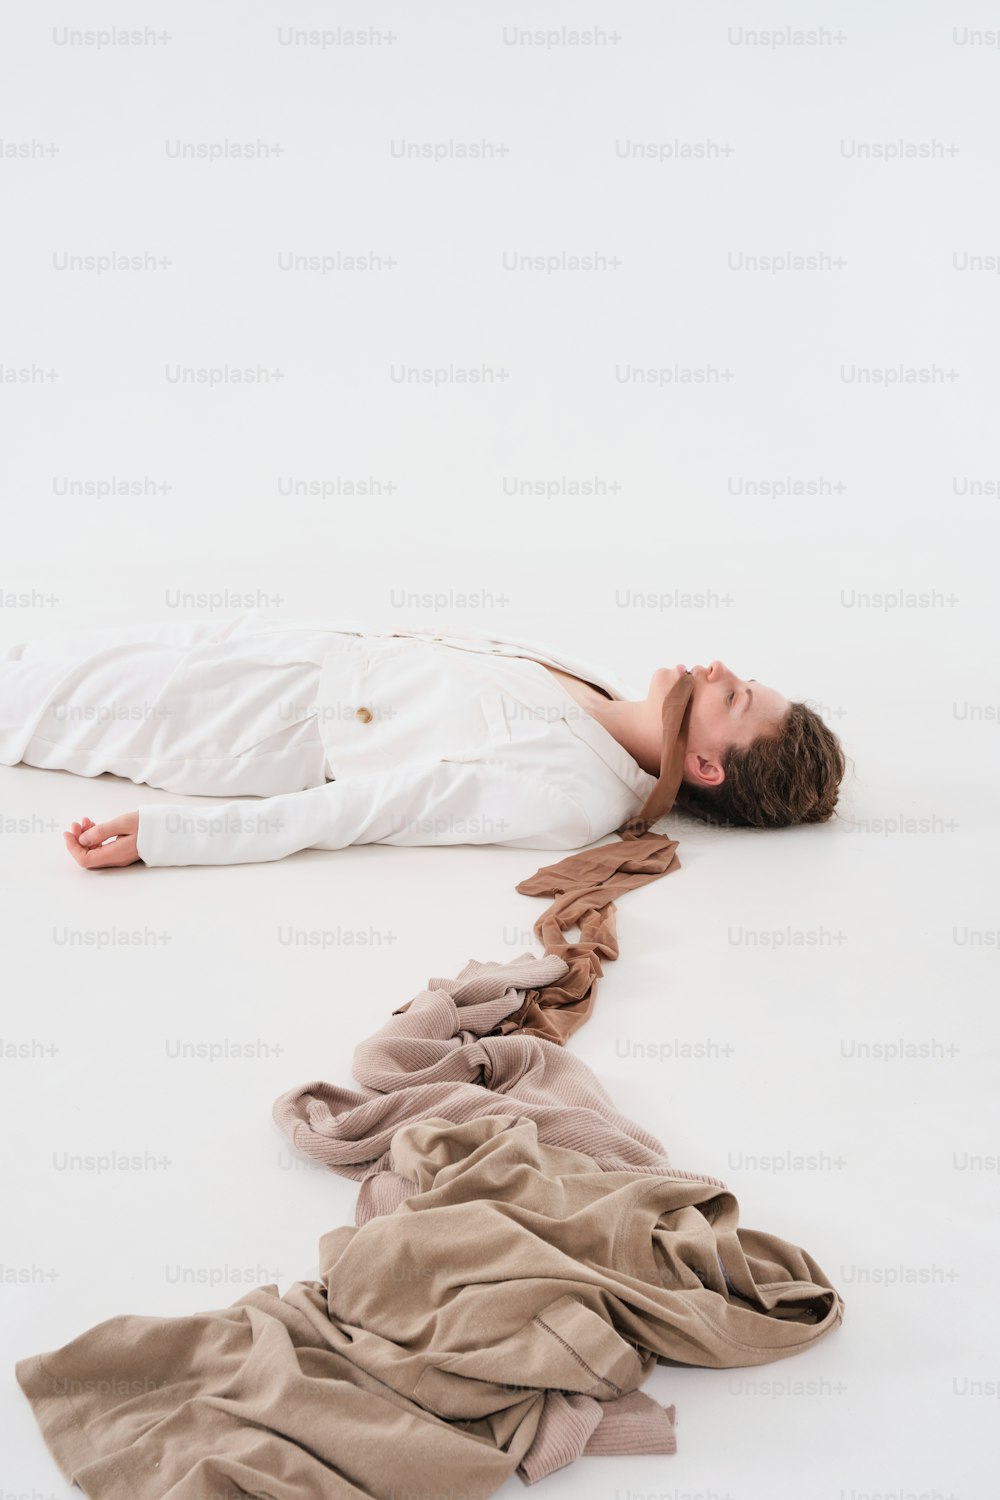 Un hombre tendido en el suelo junto a una pila de ropa